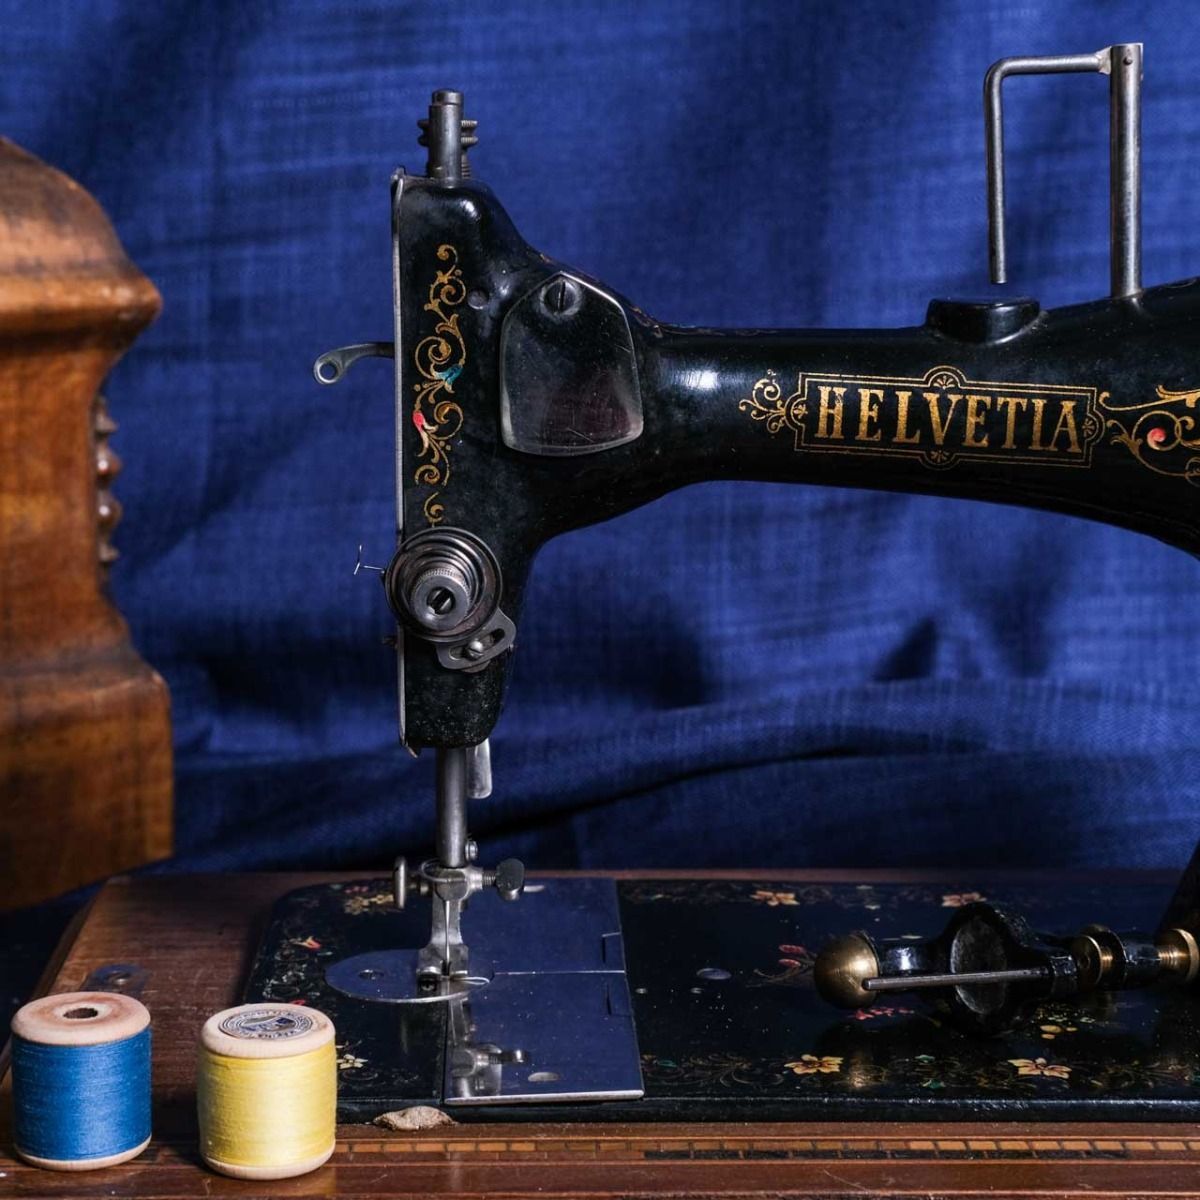 Helvetia Brand Sewing Machine